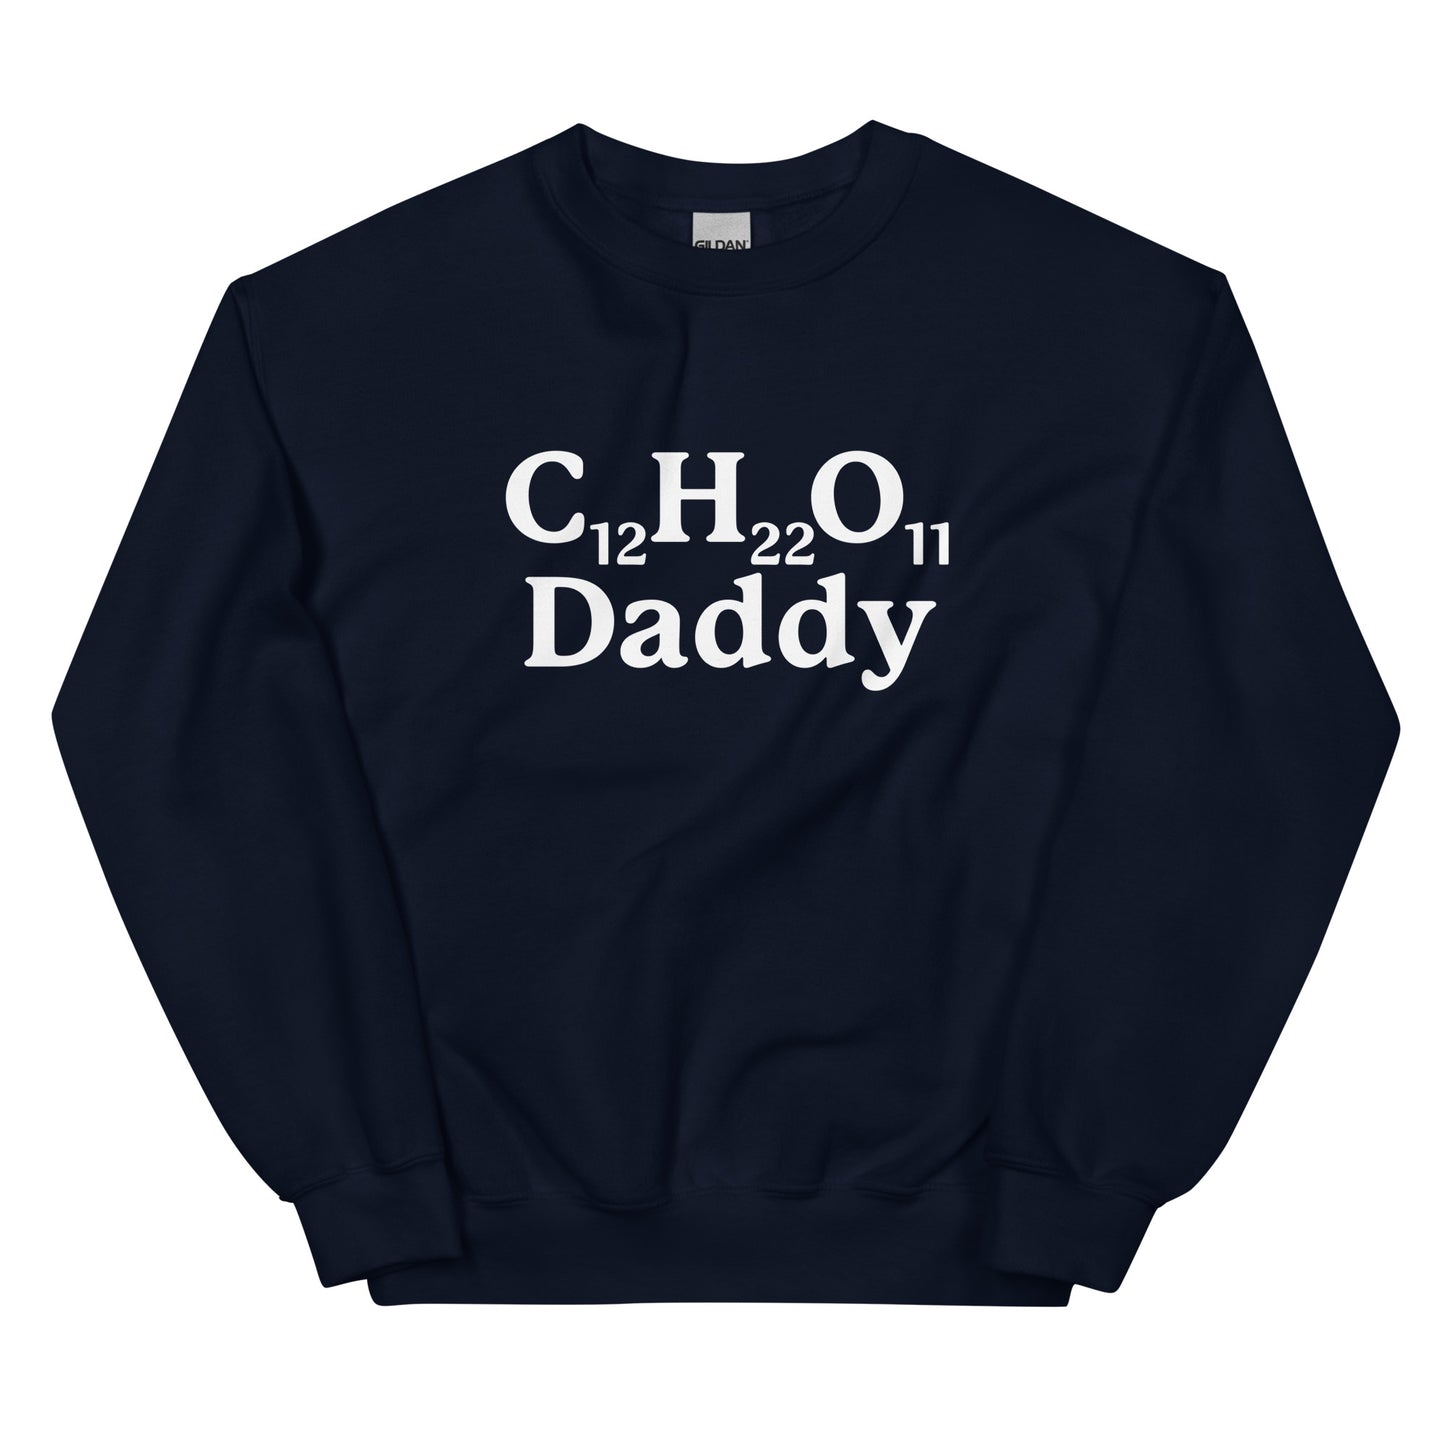 C12H22O11 Daddy (Sugar Daddy) Unisex Sweatshirt